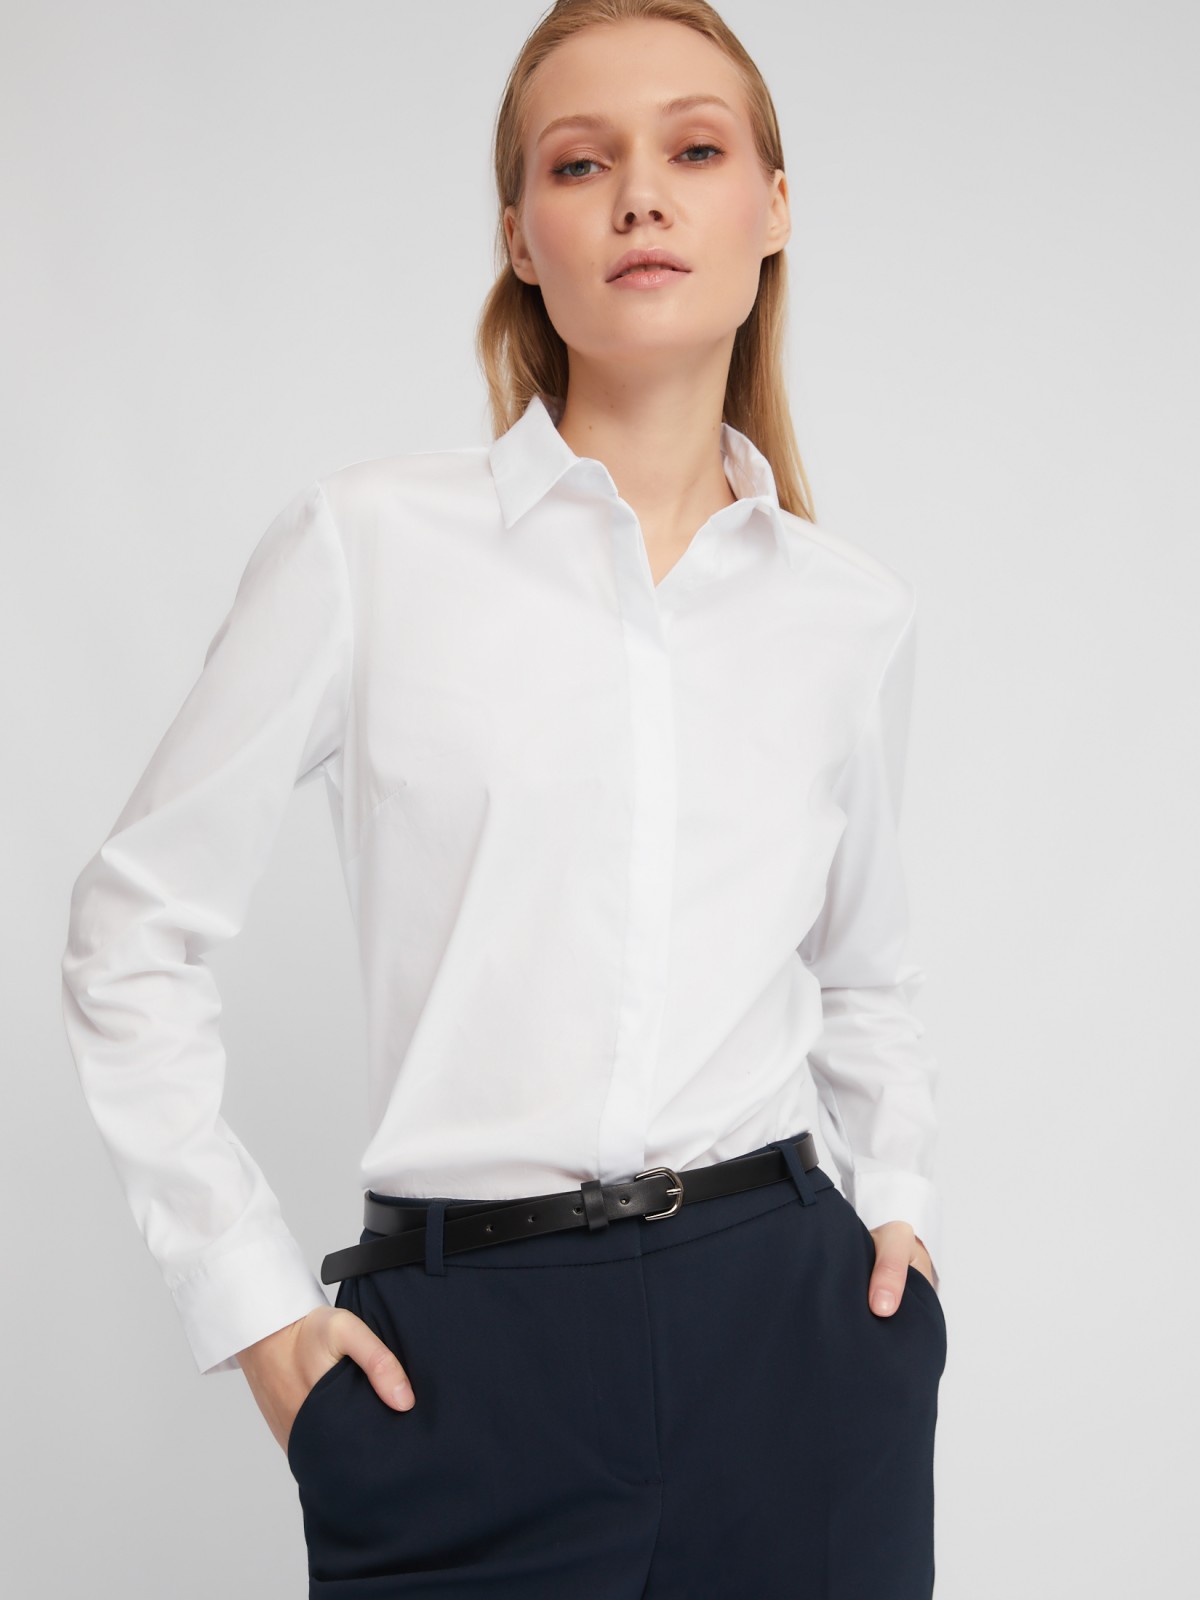 Офисная рубашка полуприлегающего силуэта с принтом-надписью zolla 024111159082, цвет белый, размер XS - фото 1